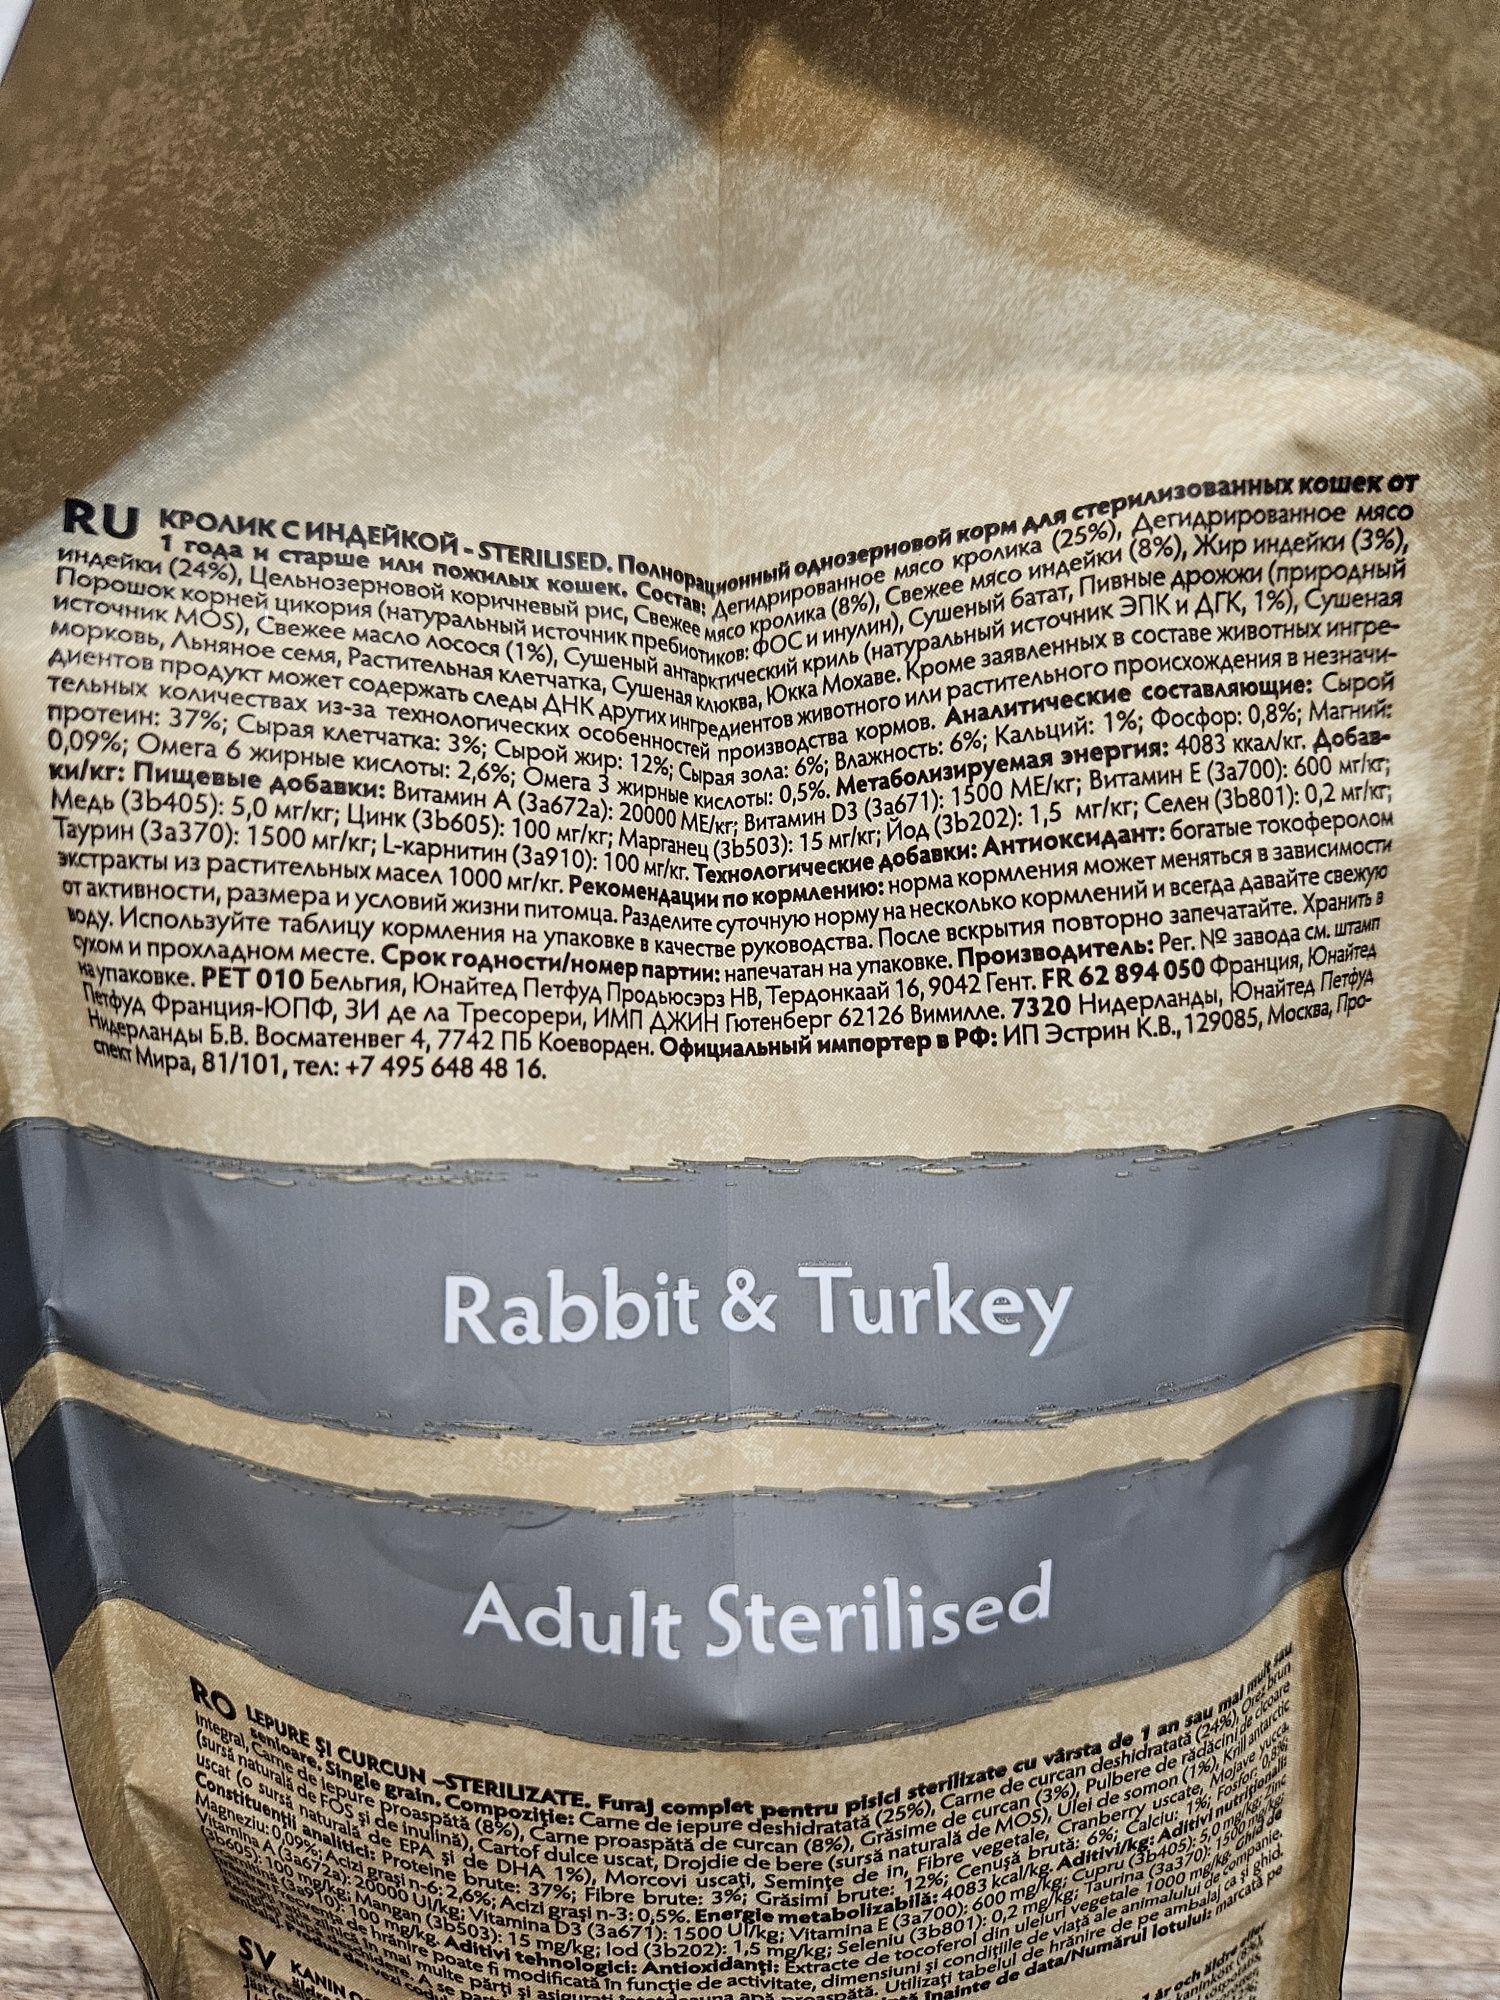 Открытая упаковка корма Grandorf Rabbit&Turkey Adult Sterilised